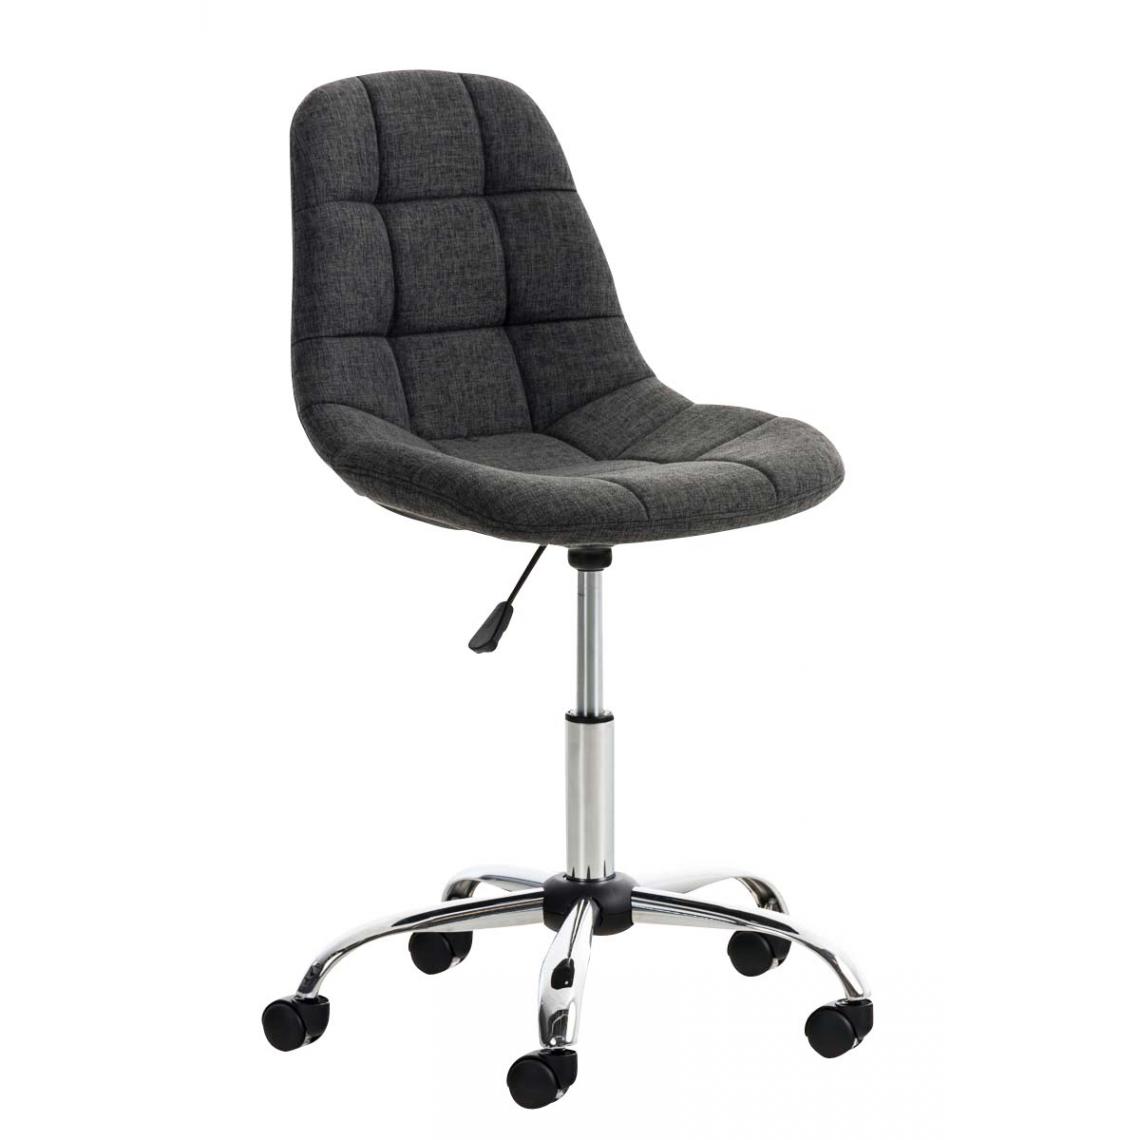 Icaverne - Distingué Chaise de bureau categorie Sanaa Stoff couleur gris foncé - Chaises